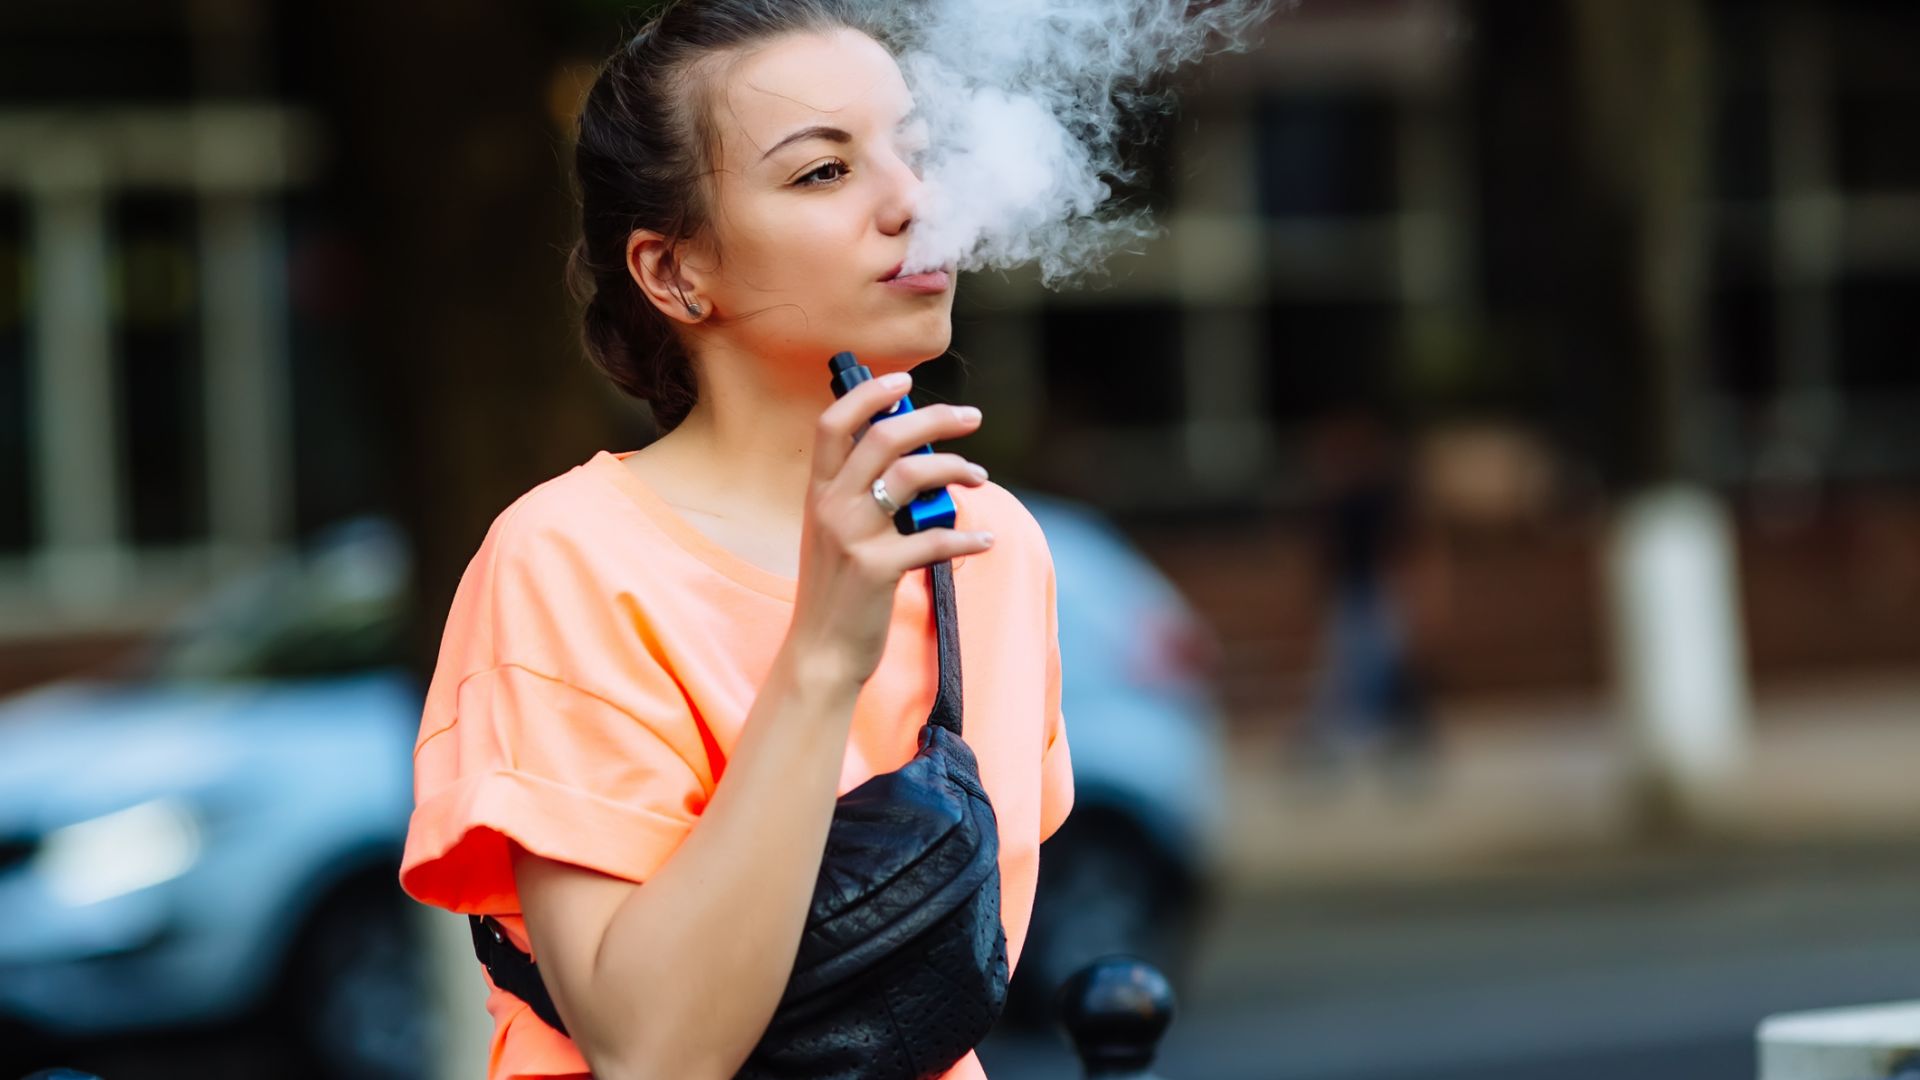 Страната с най-много потребители: Електронните цигари във Великобритания са безопасни